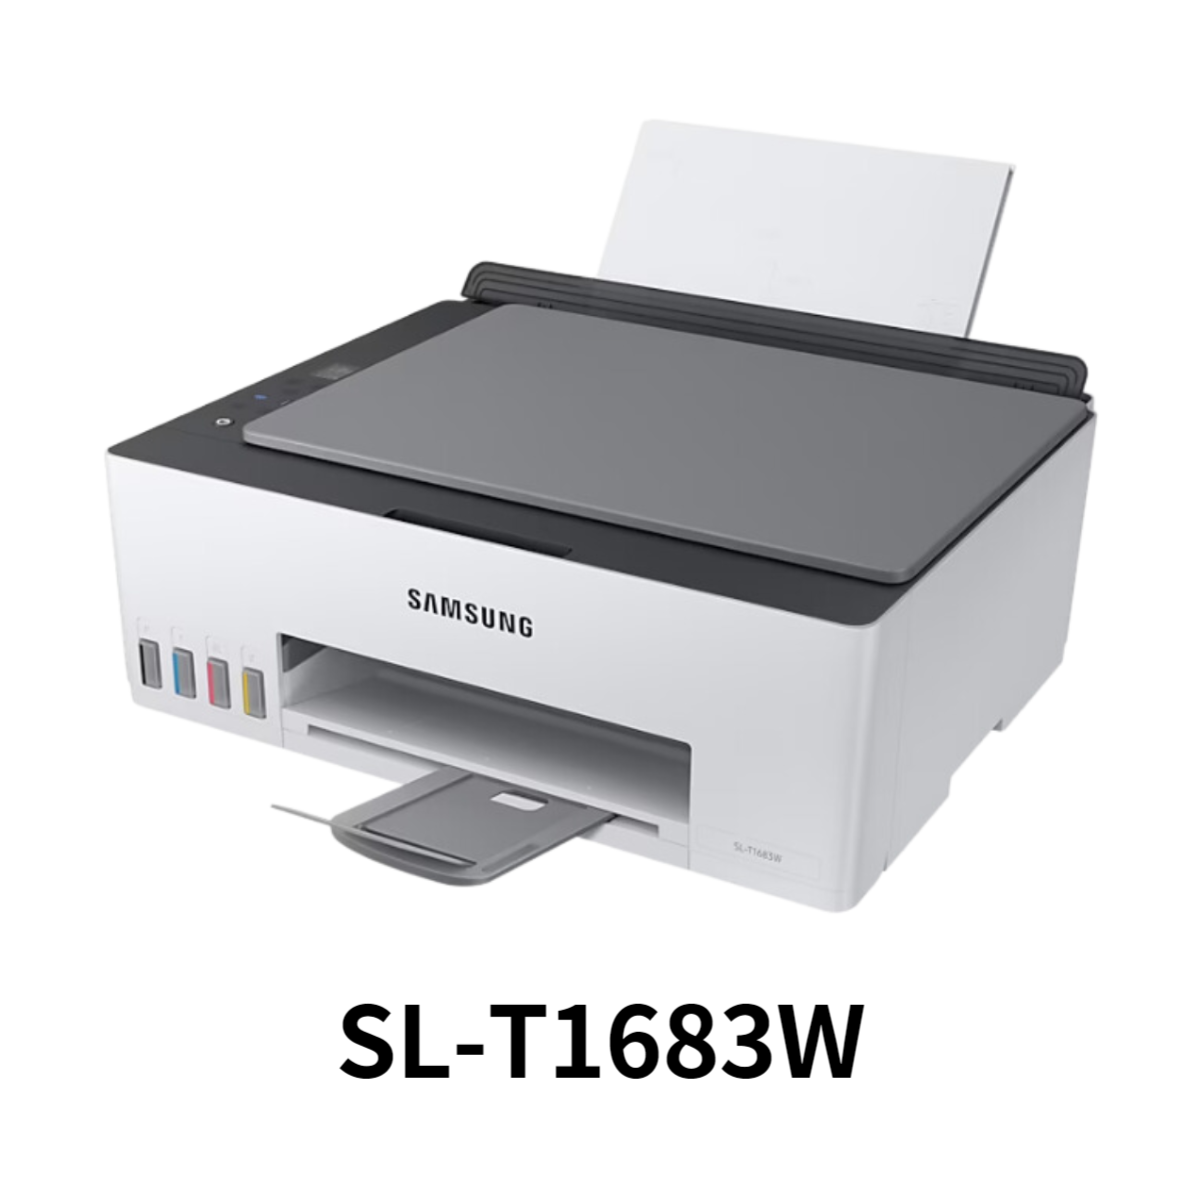 SL-T1683W 프린터